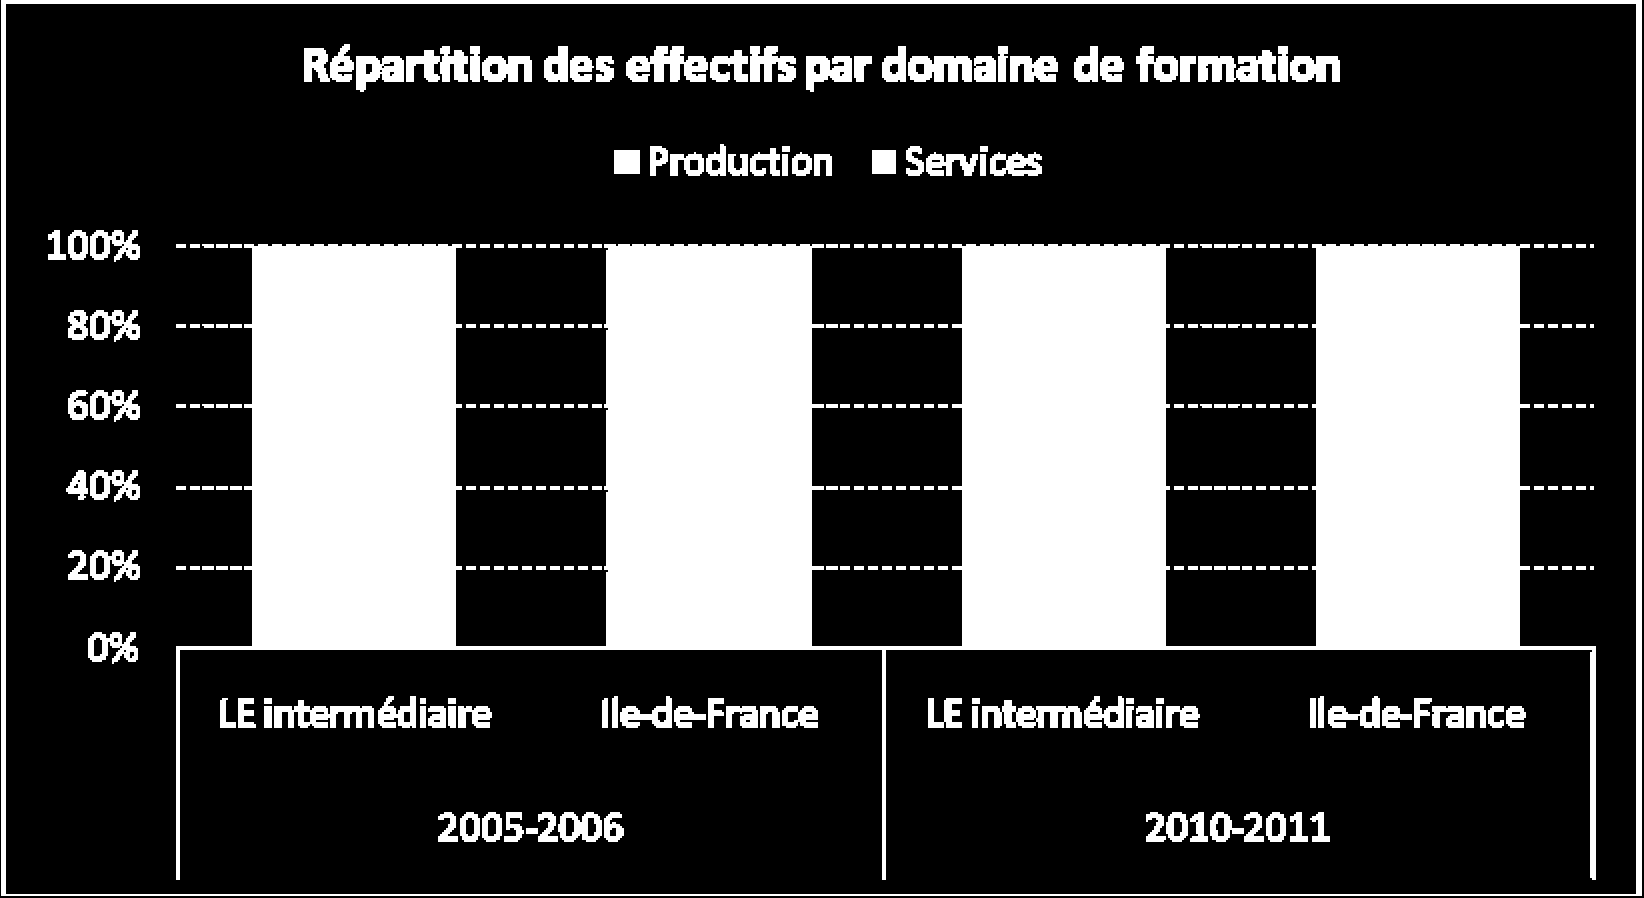 47 Les formations dans les services sont majoritaires, mais celles de la production sont plus présentes qu en moyenne en Ile de France.